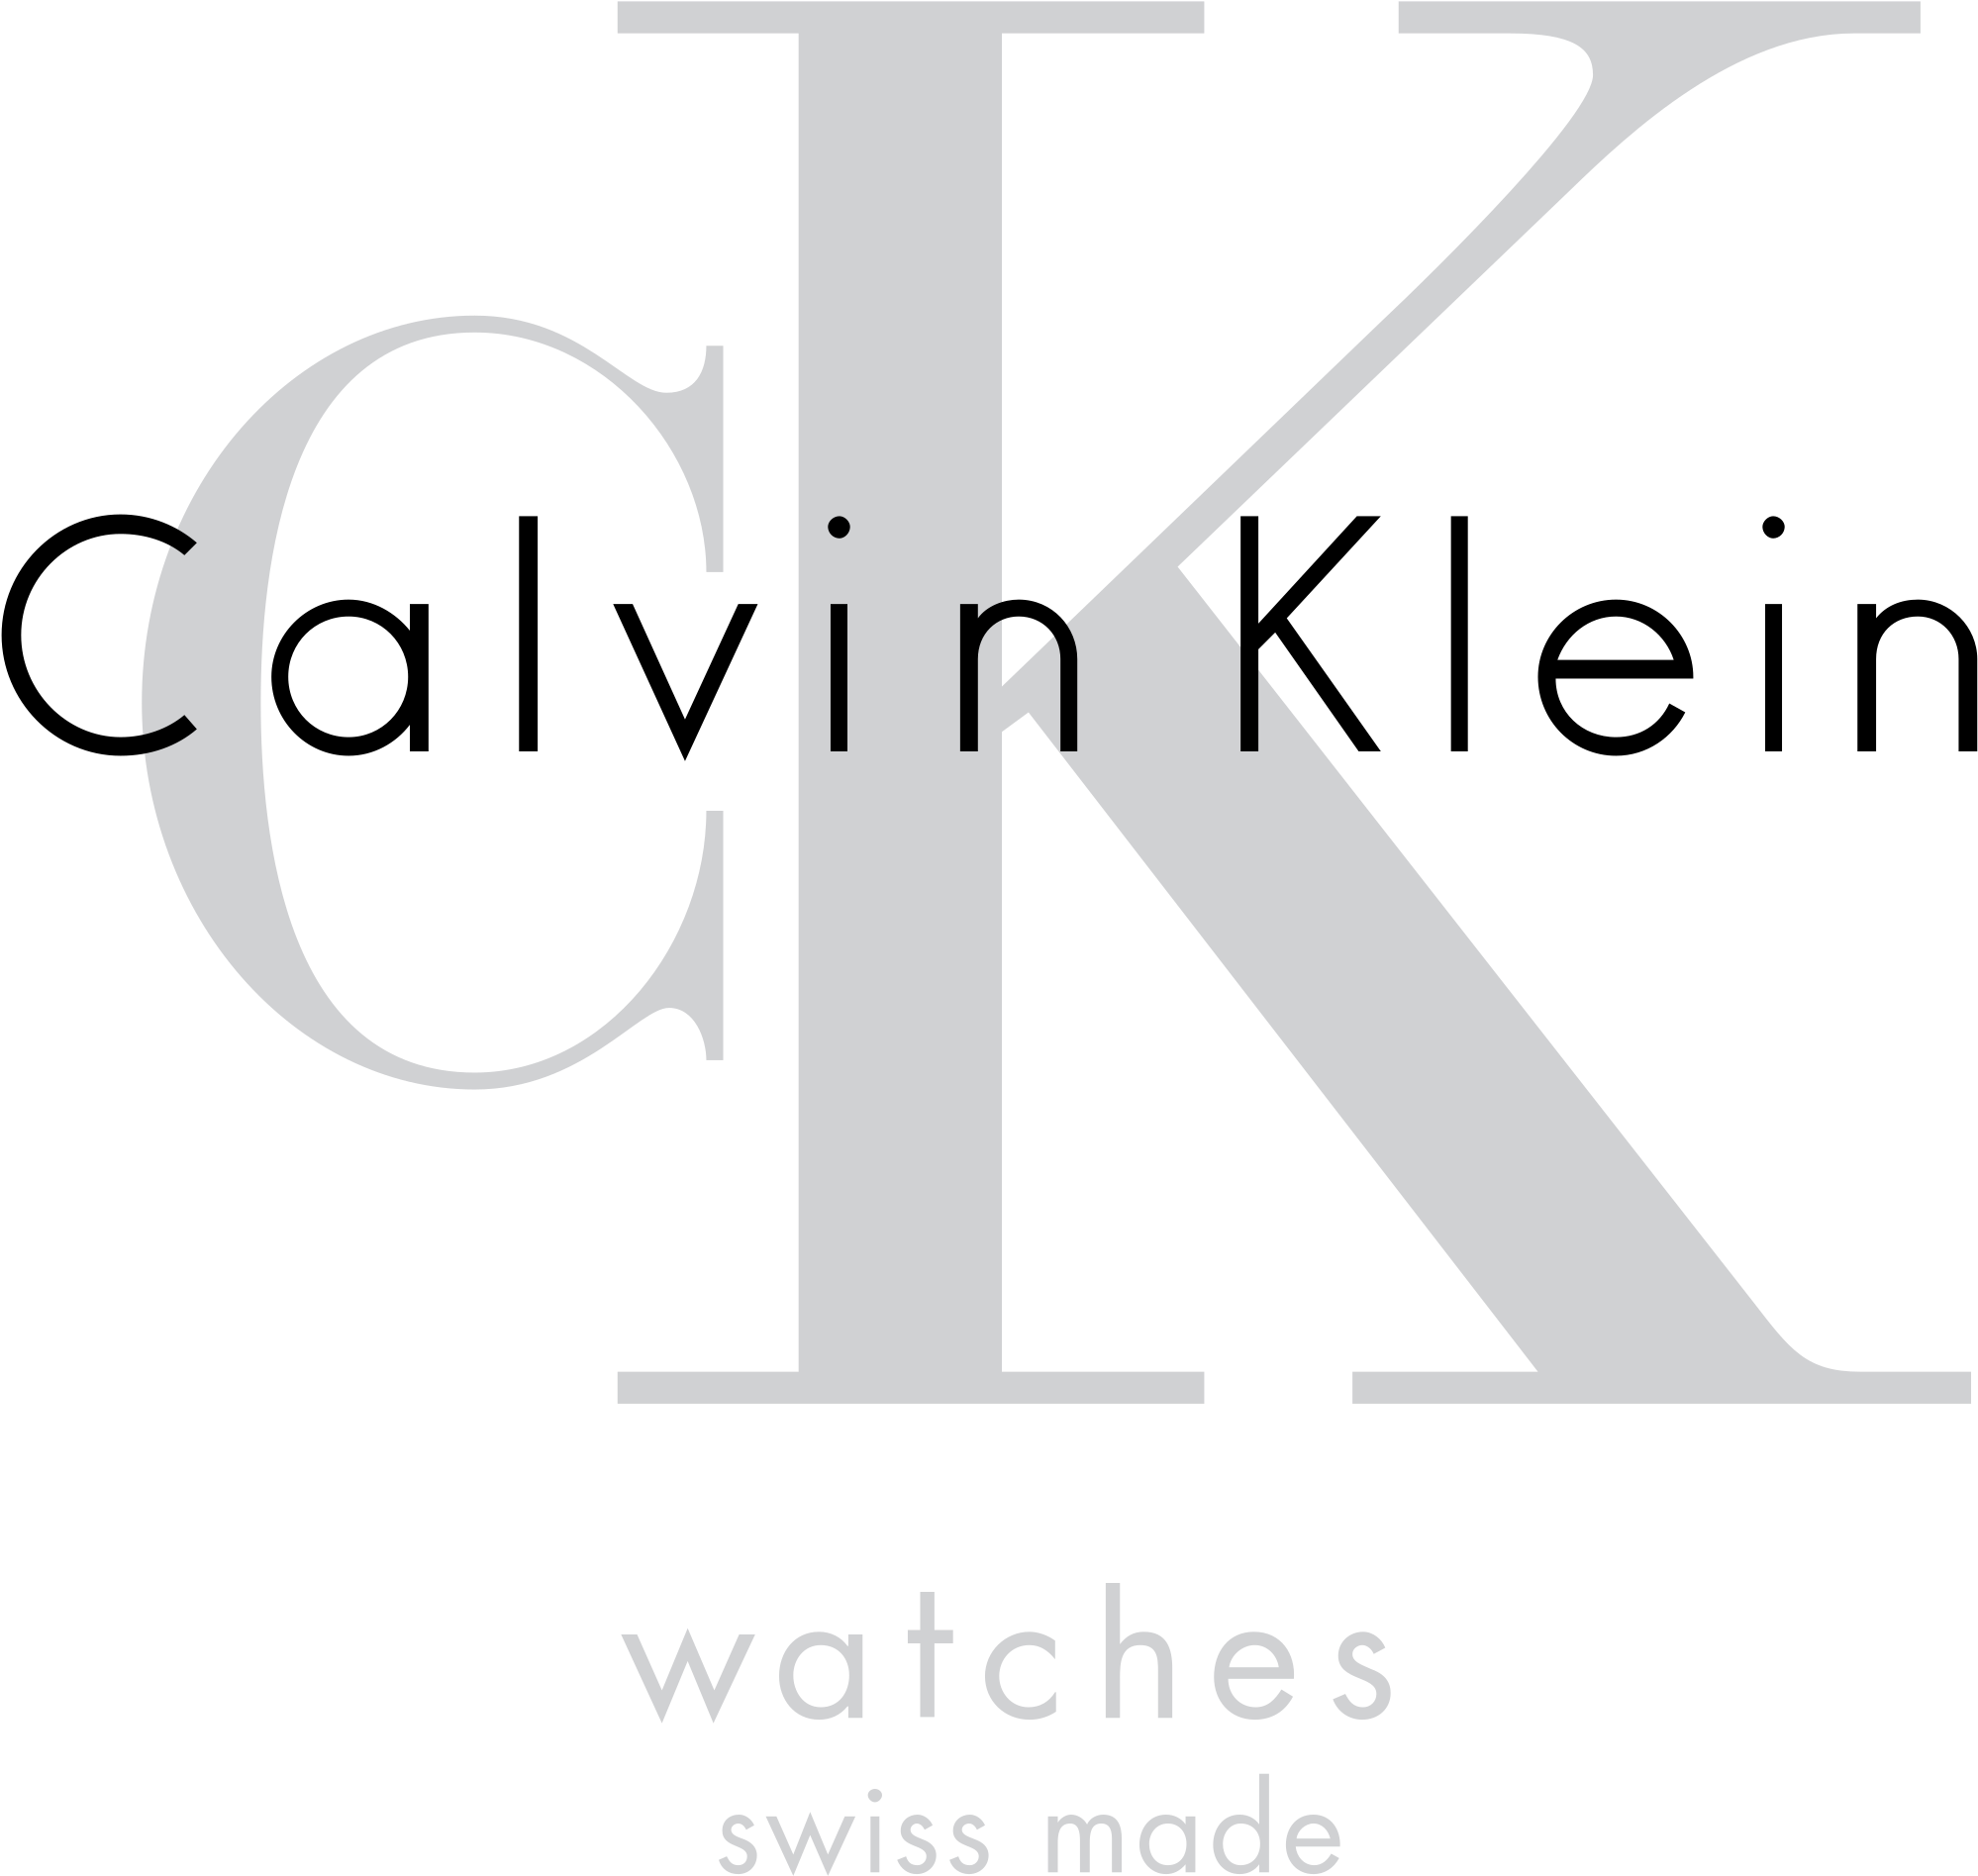 CK calvin klein logotipo imagem transparente